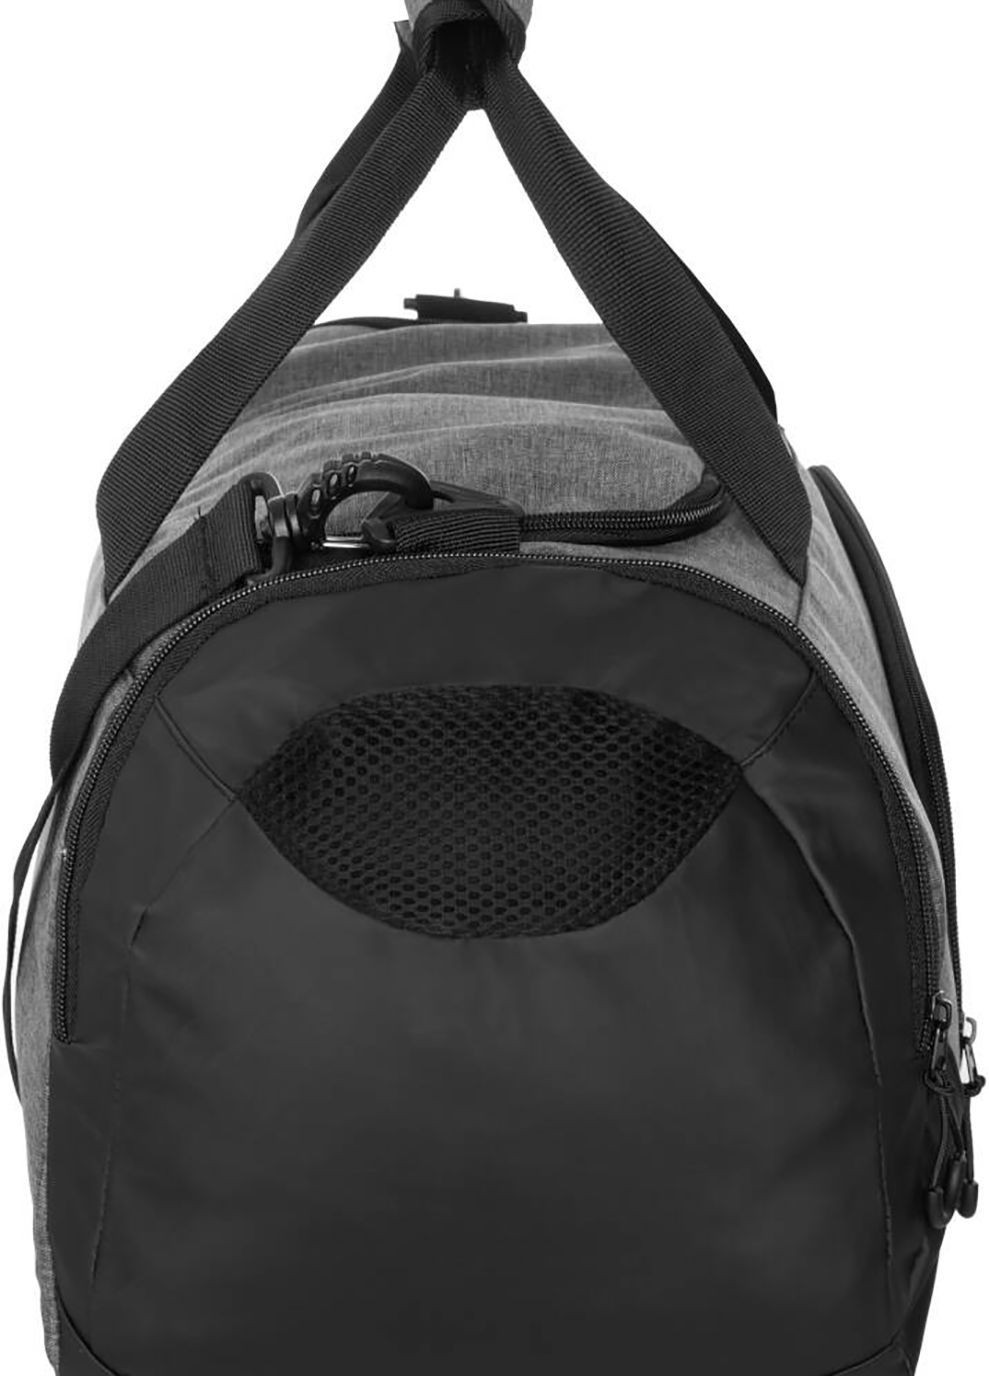 Cумка Duffel bag M 60146 Серый, Черный 48x25x29см Aqua Speed (282615766)